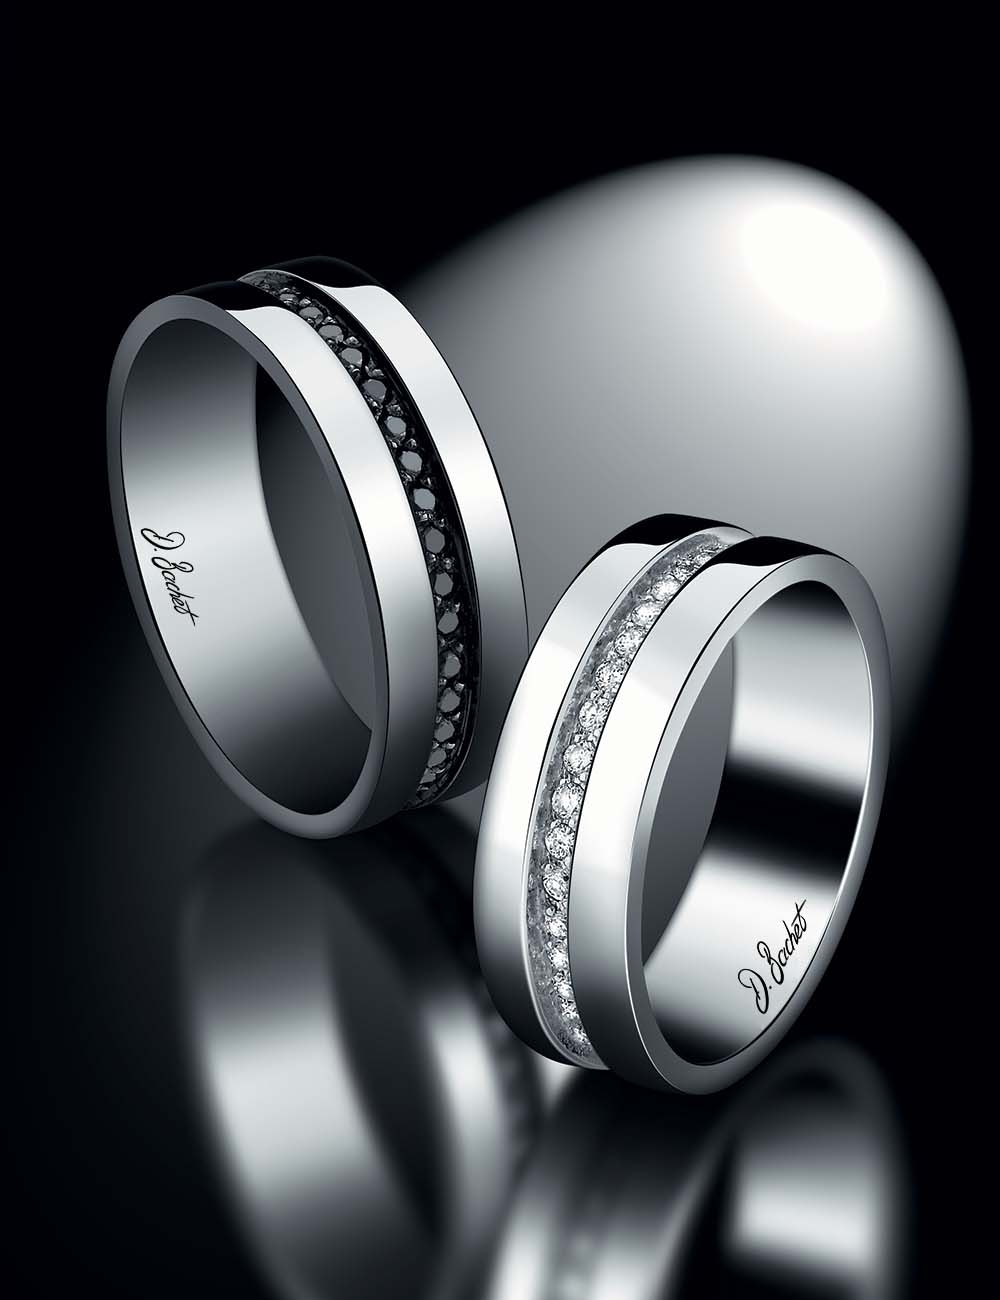 Alliance Femme 6mm en platine avec diamants blancs, style moderne élégant, aussi disponible avec diamants noirs.